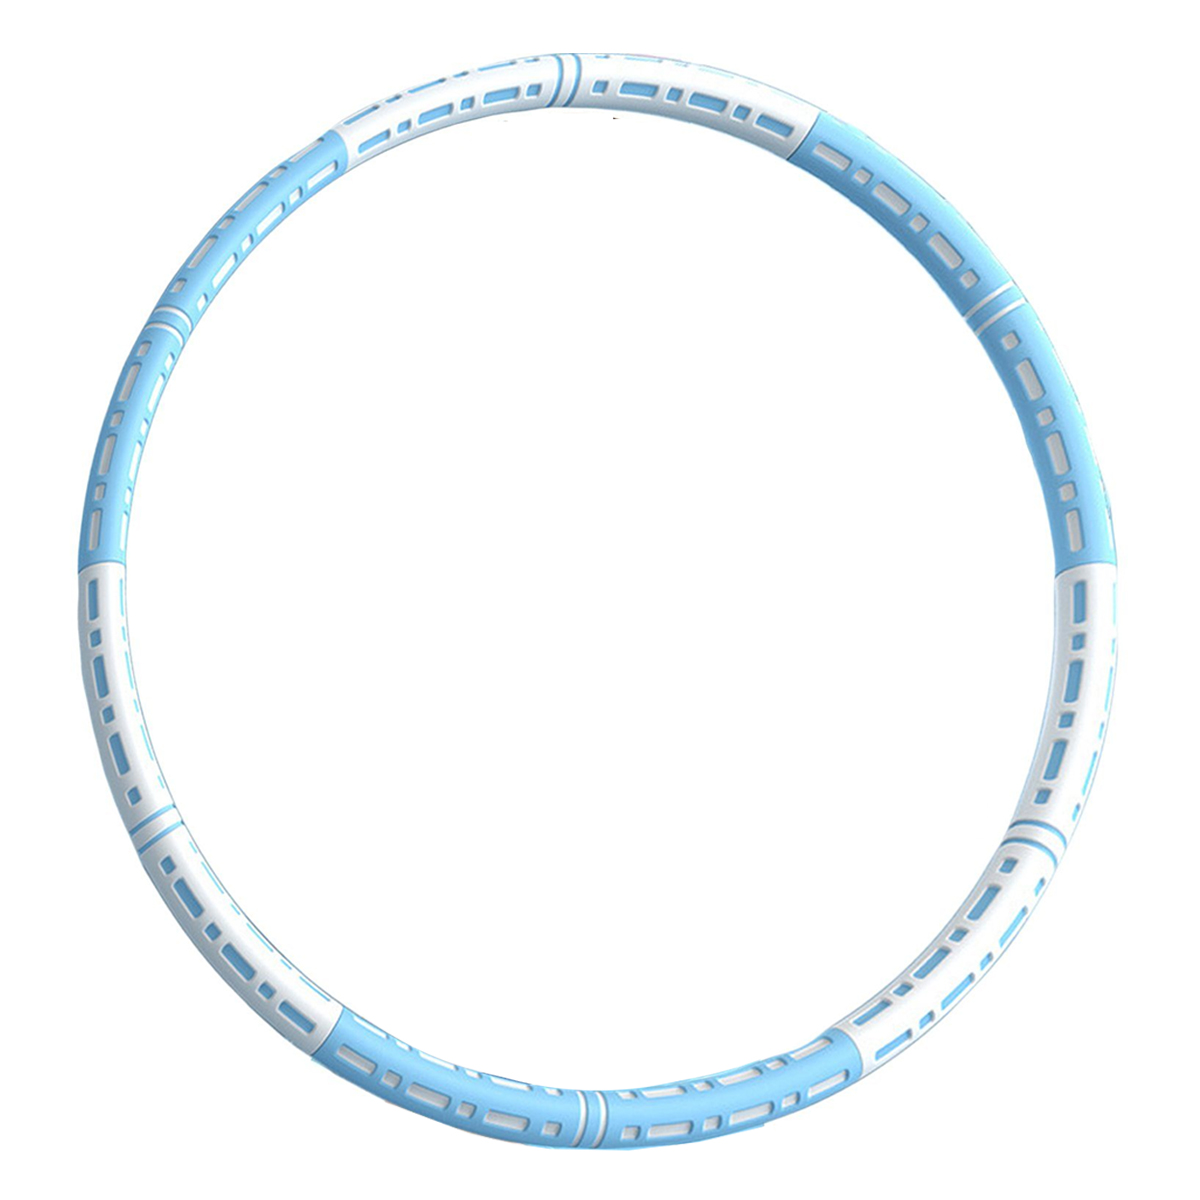 LEIGO Hula-Hoop-Reifen, für Blau-weiß Hula-Hoop-Reifen, Schnitte Abnehmbar, 6 Fitnessreifen, jeden Hula Hoop anspruch